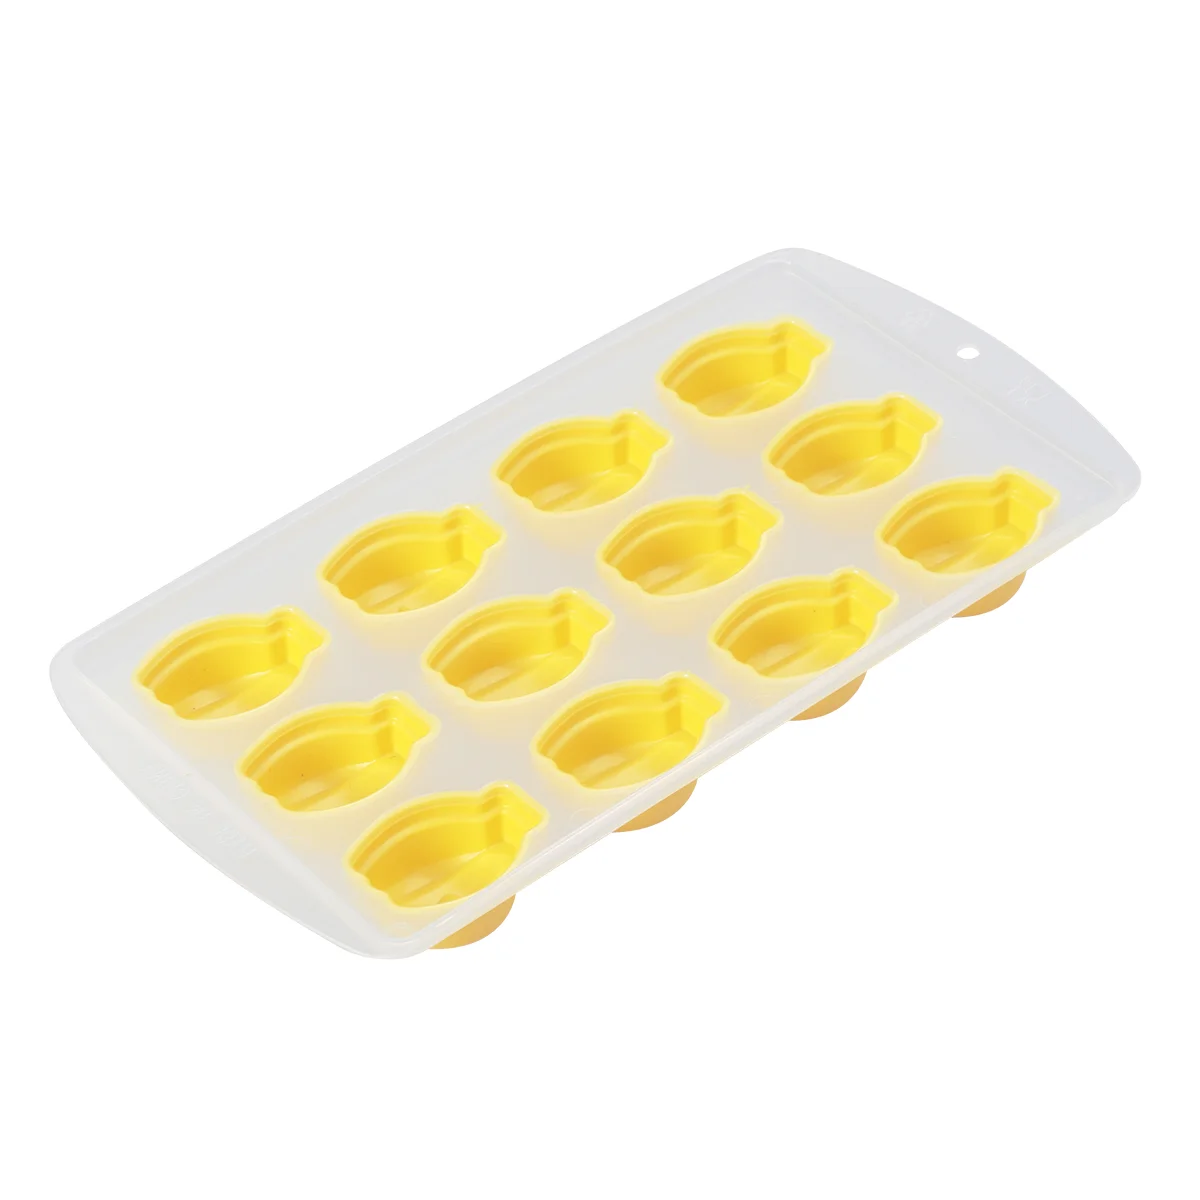 

4 Pcs Safe Silicone 12 Lattices Banana Shaped Ice Molds Ice Cube Trays Fruits Shaped Ice Making Tool (Yellow)